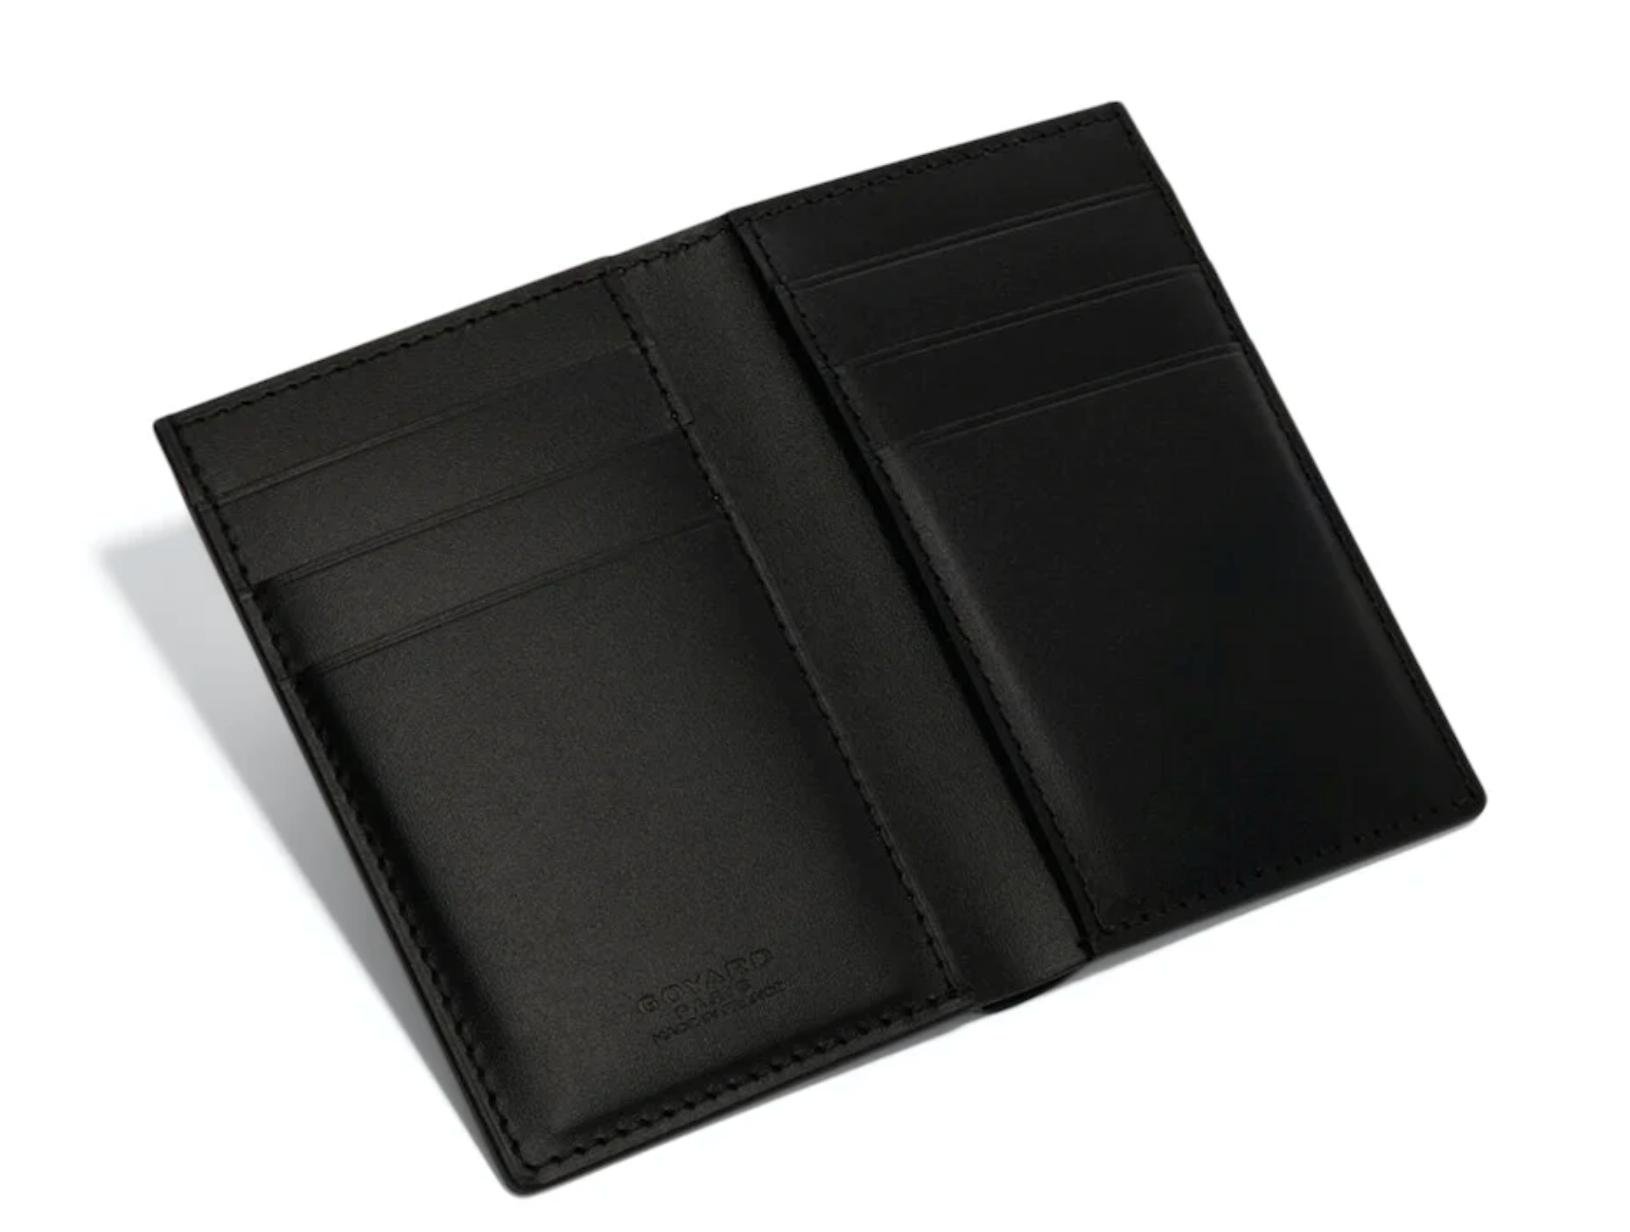 Buy Stylish Goyard Black Card Holder Wallet at Ubuy UK